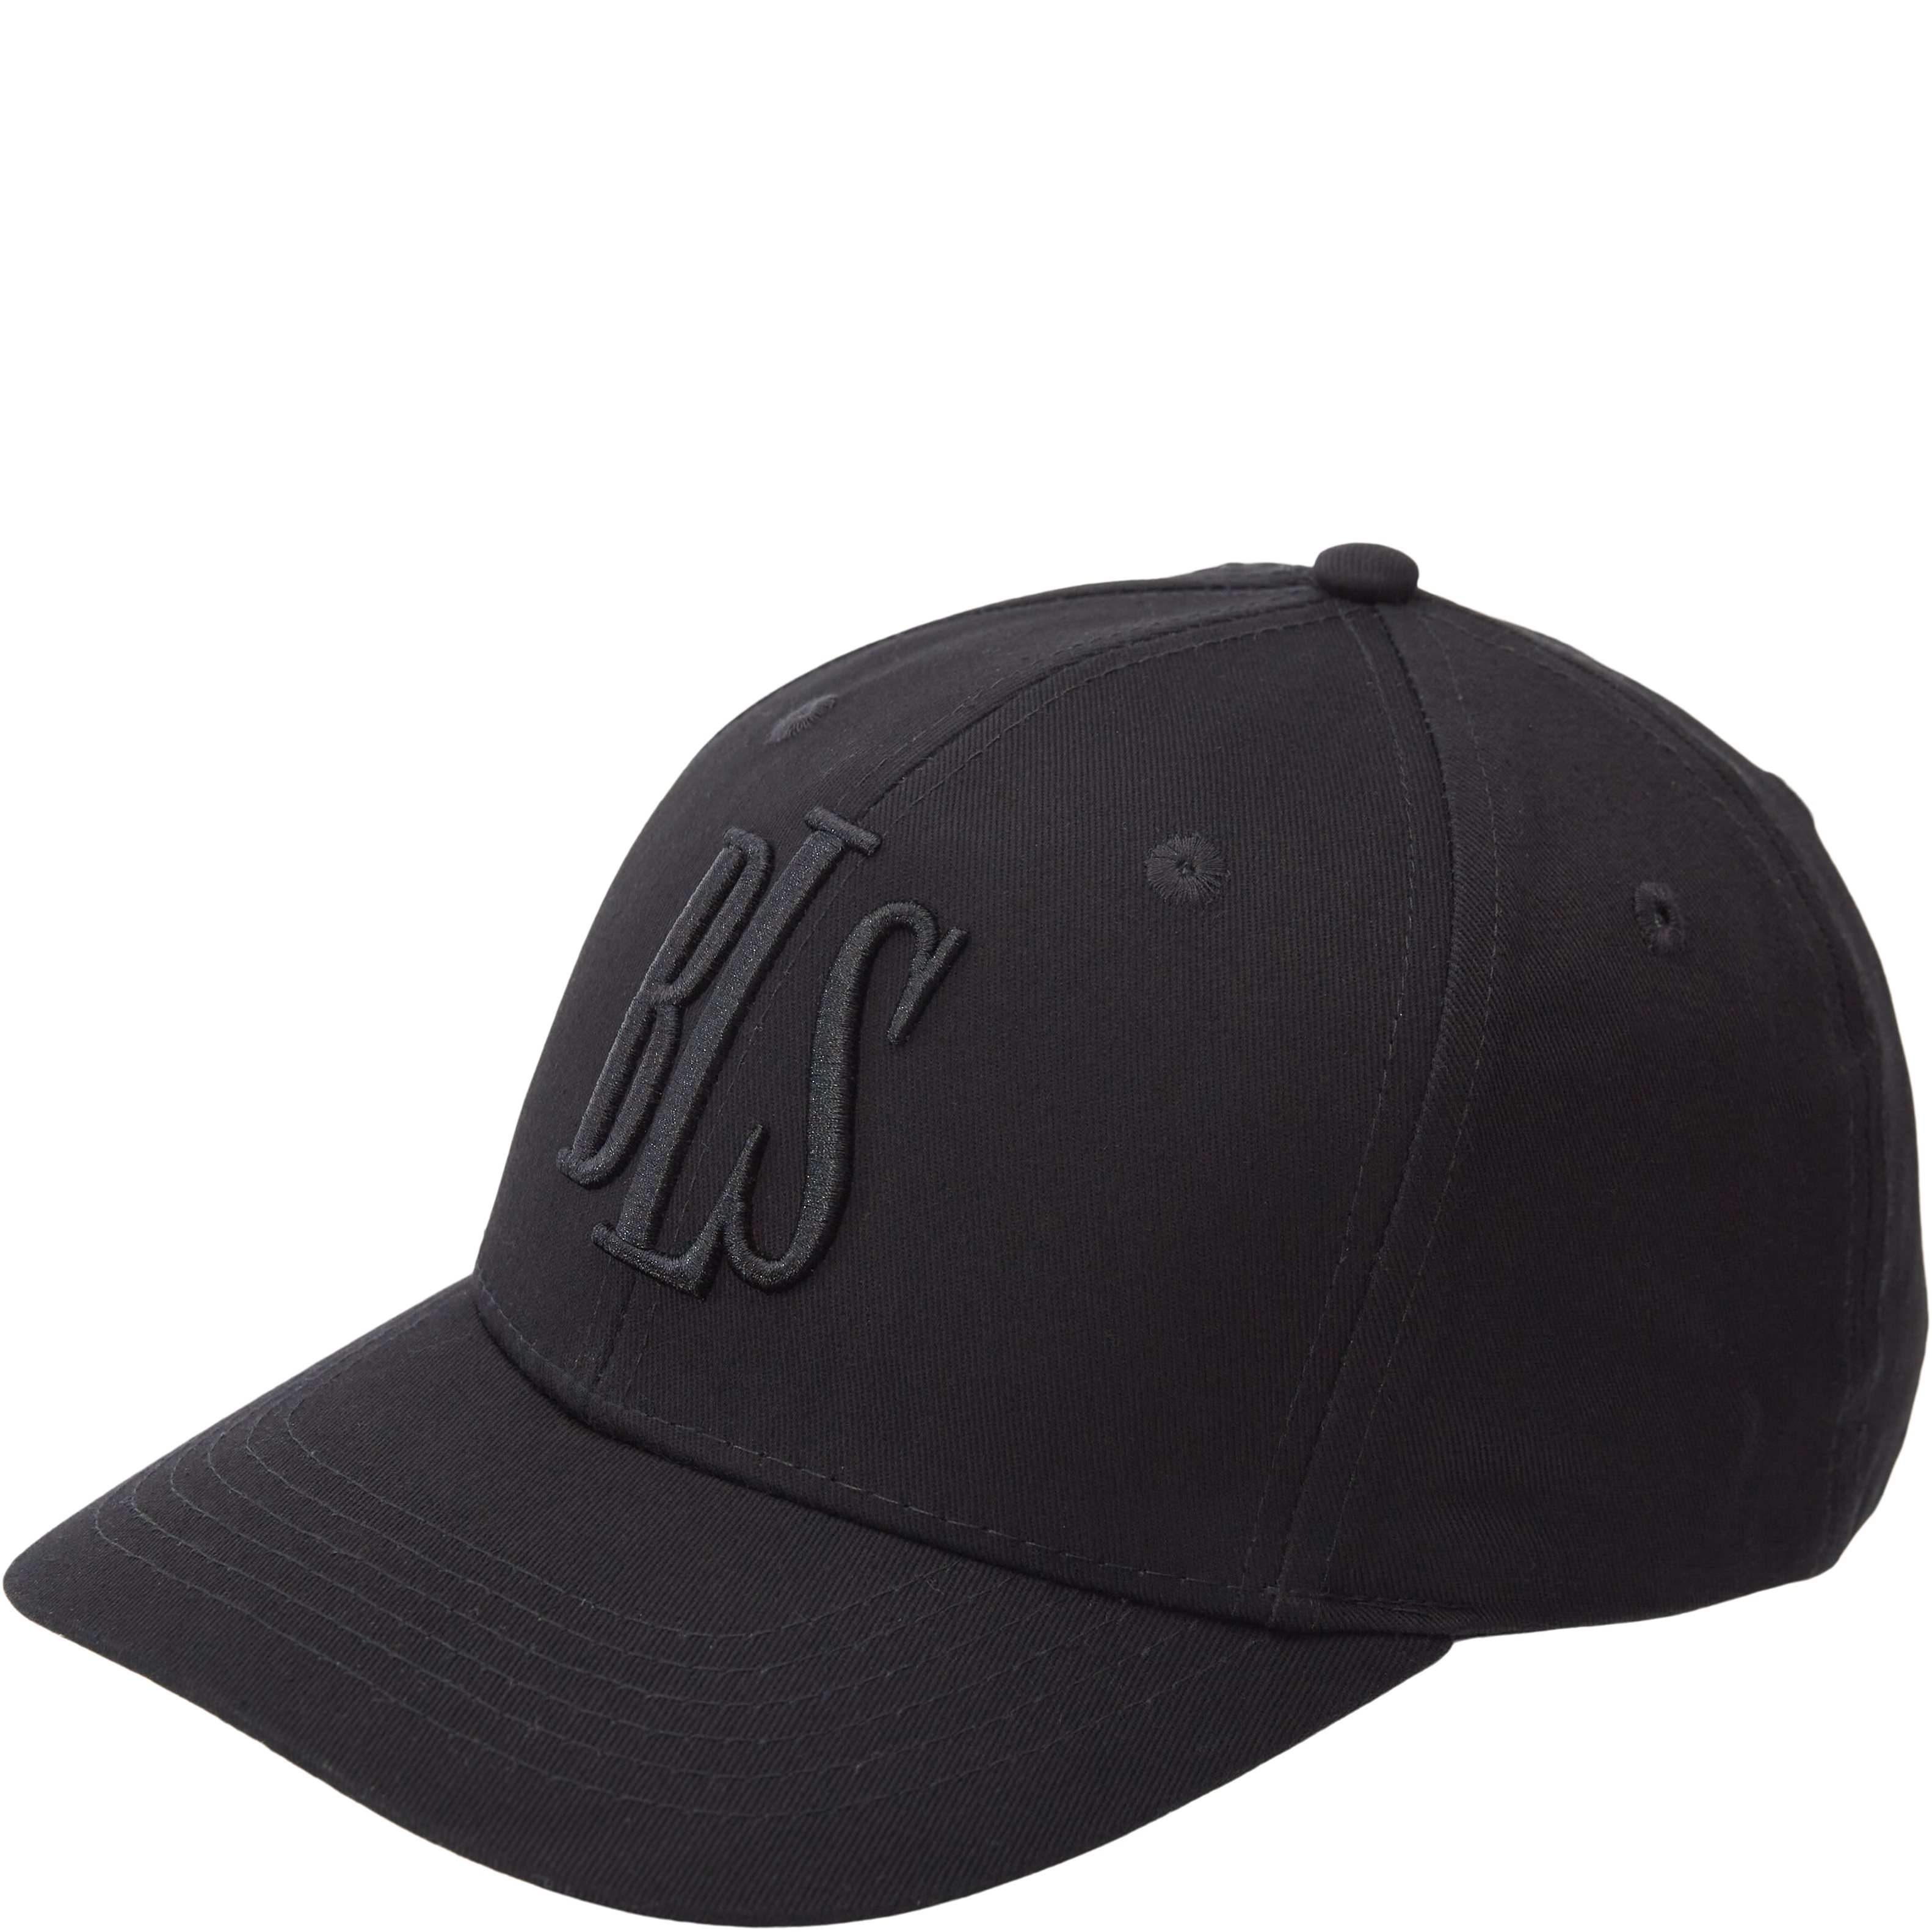 BLS Beanies CLASSIC BASEBALL CAP TONAL BLACK 99103 Black